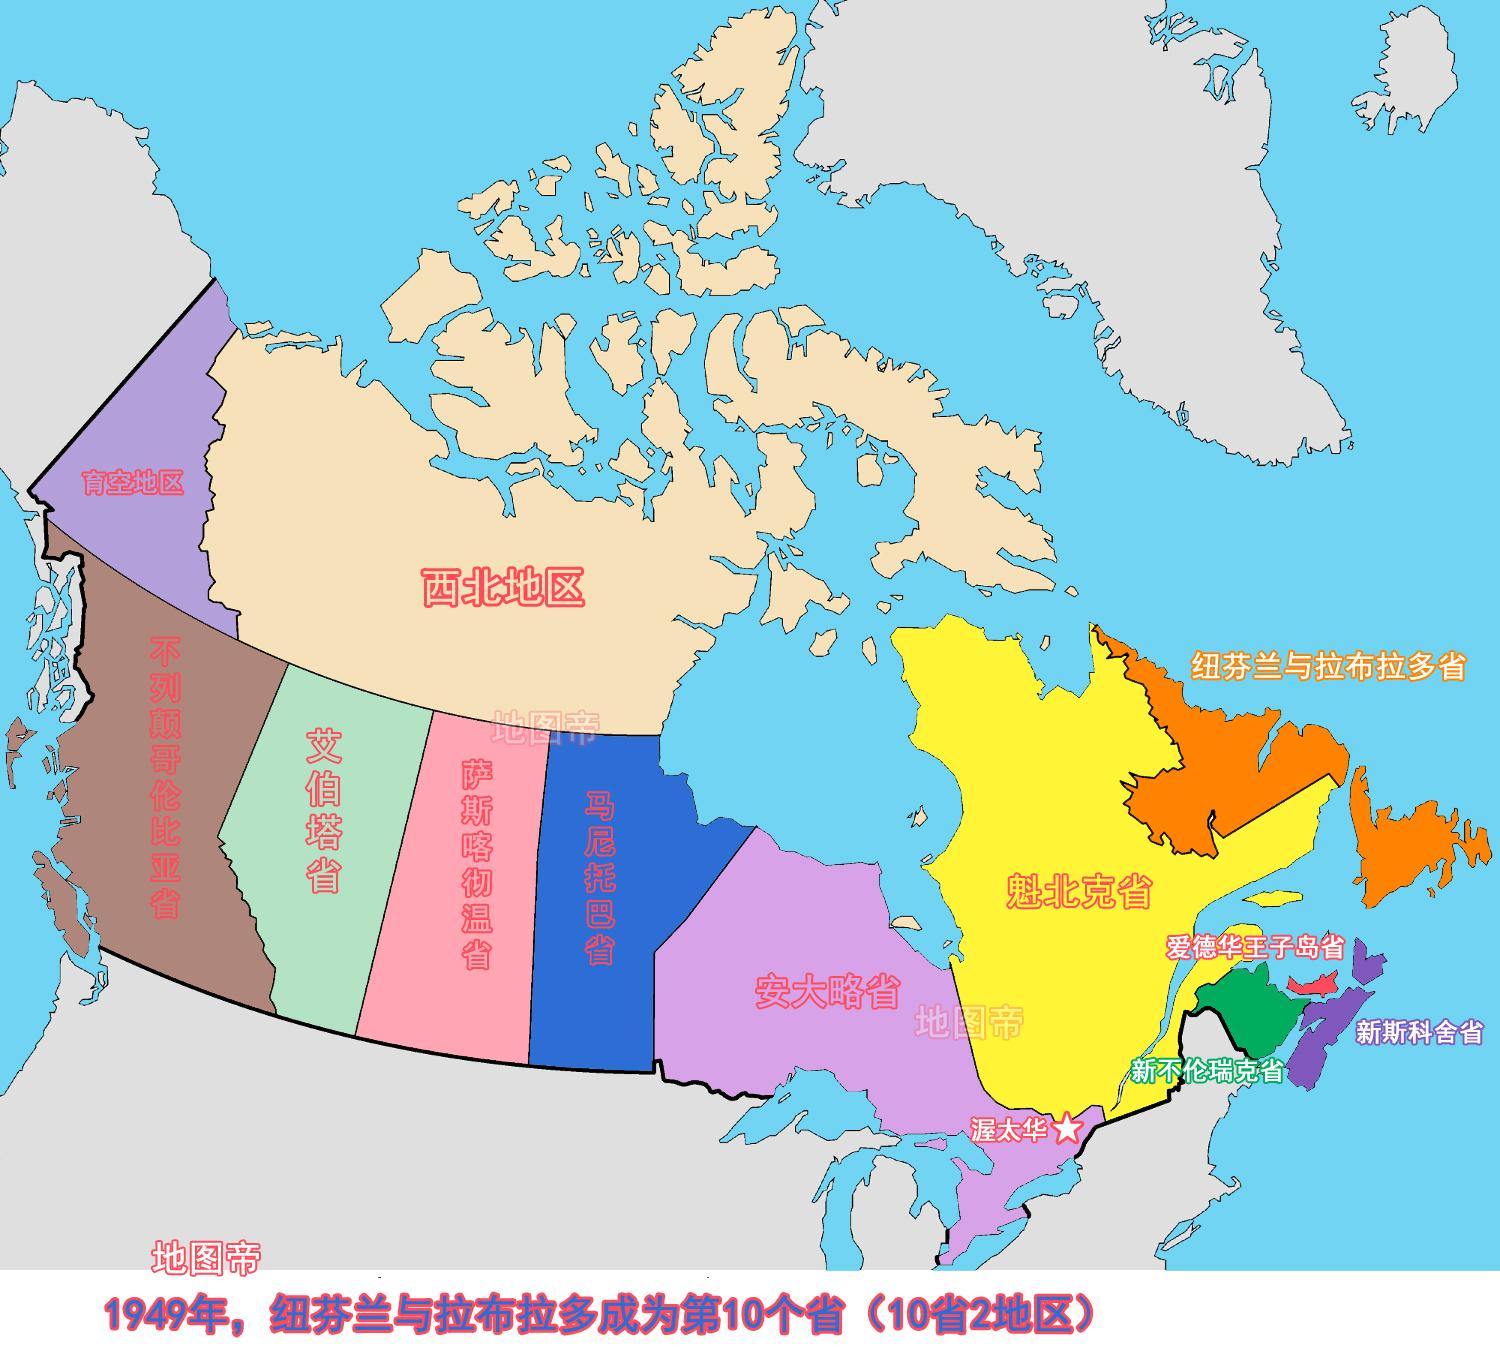 加拿大凭什么拥有那么大国土面积